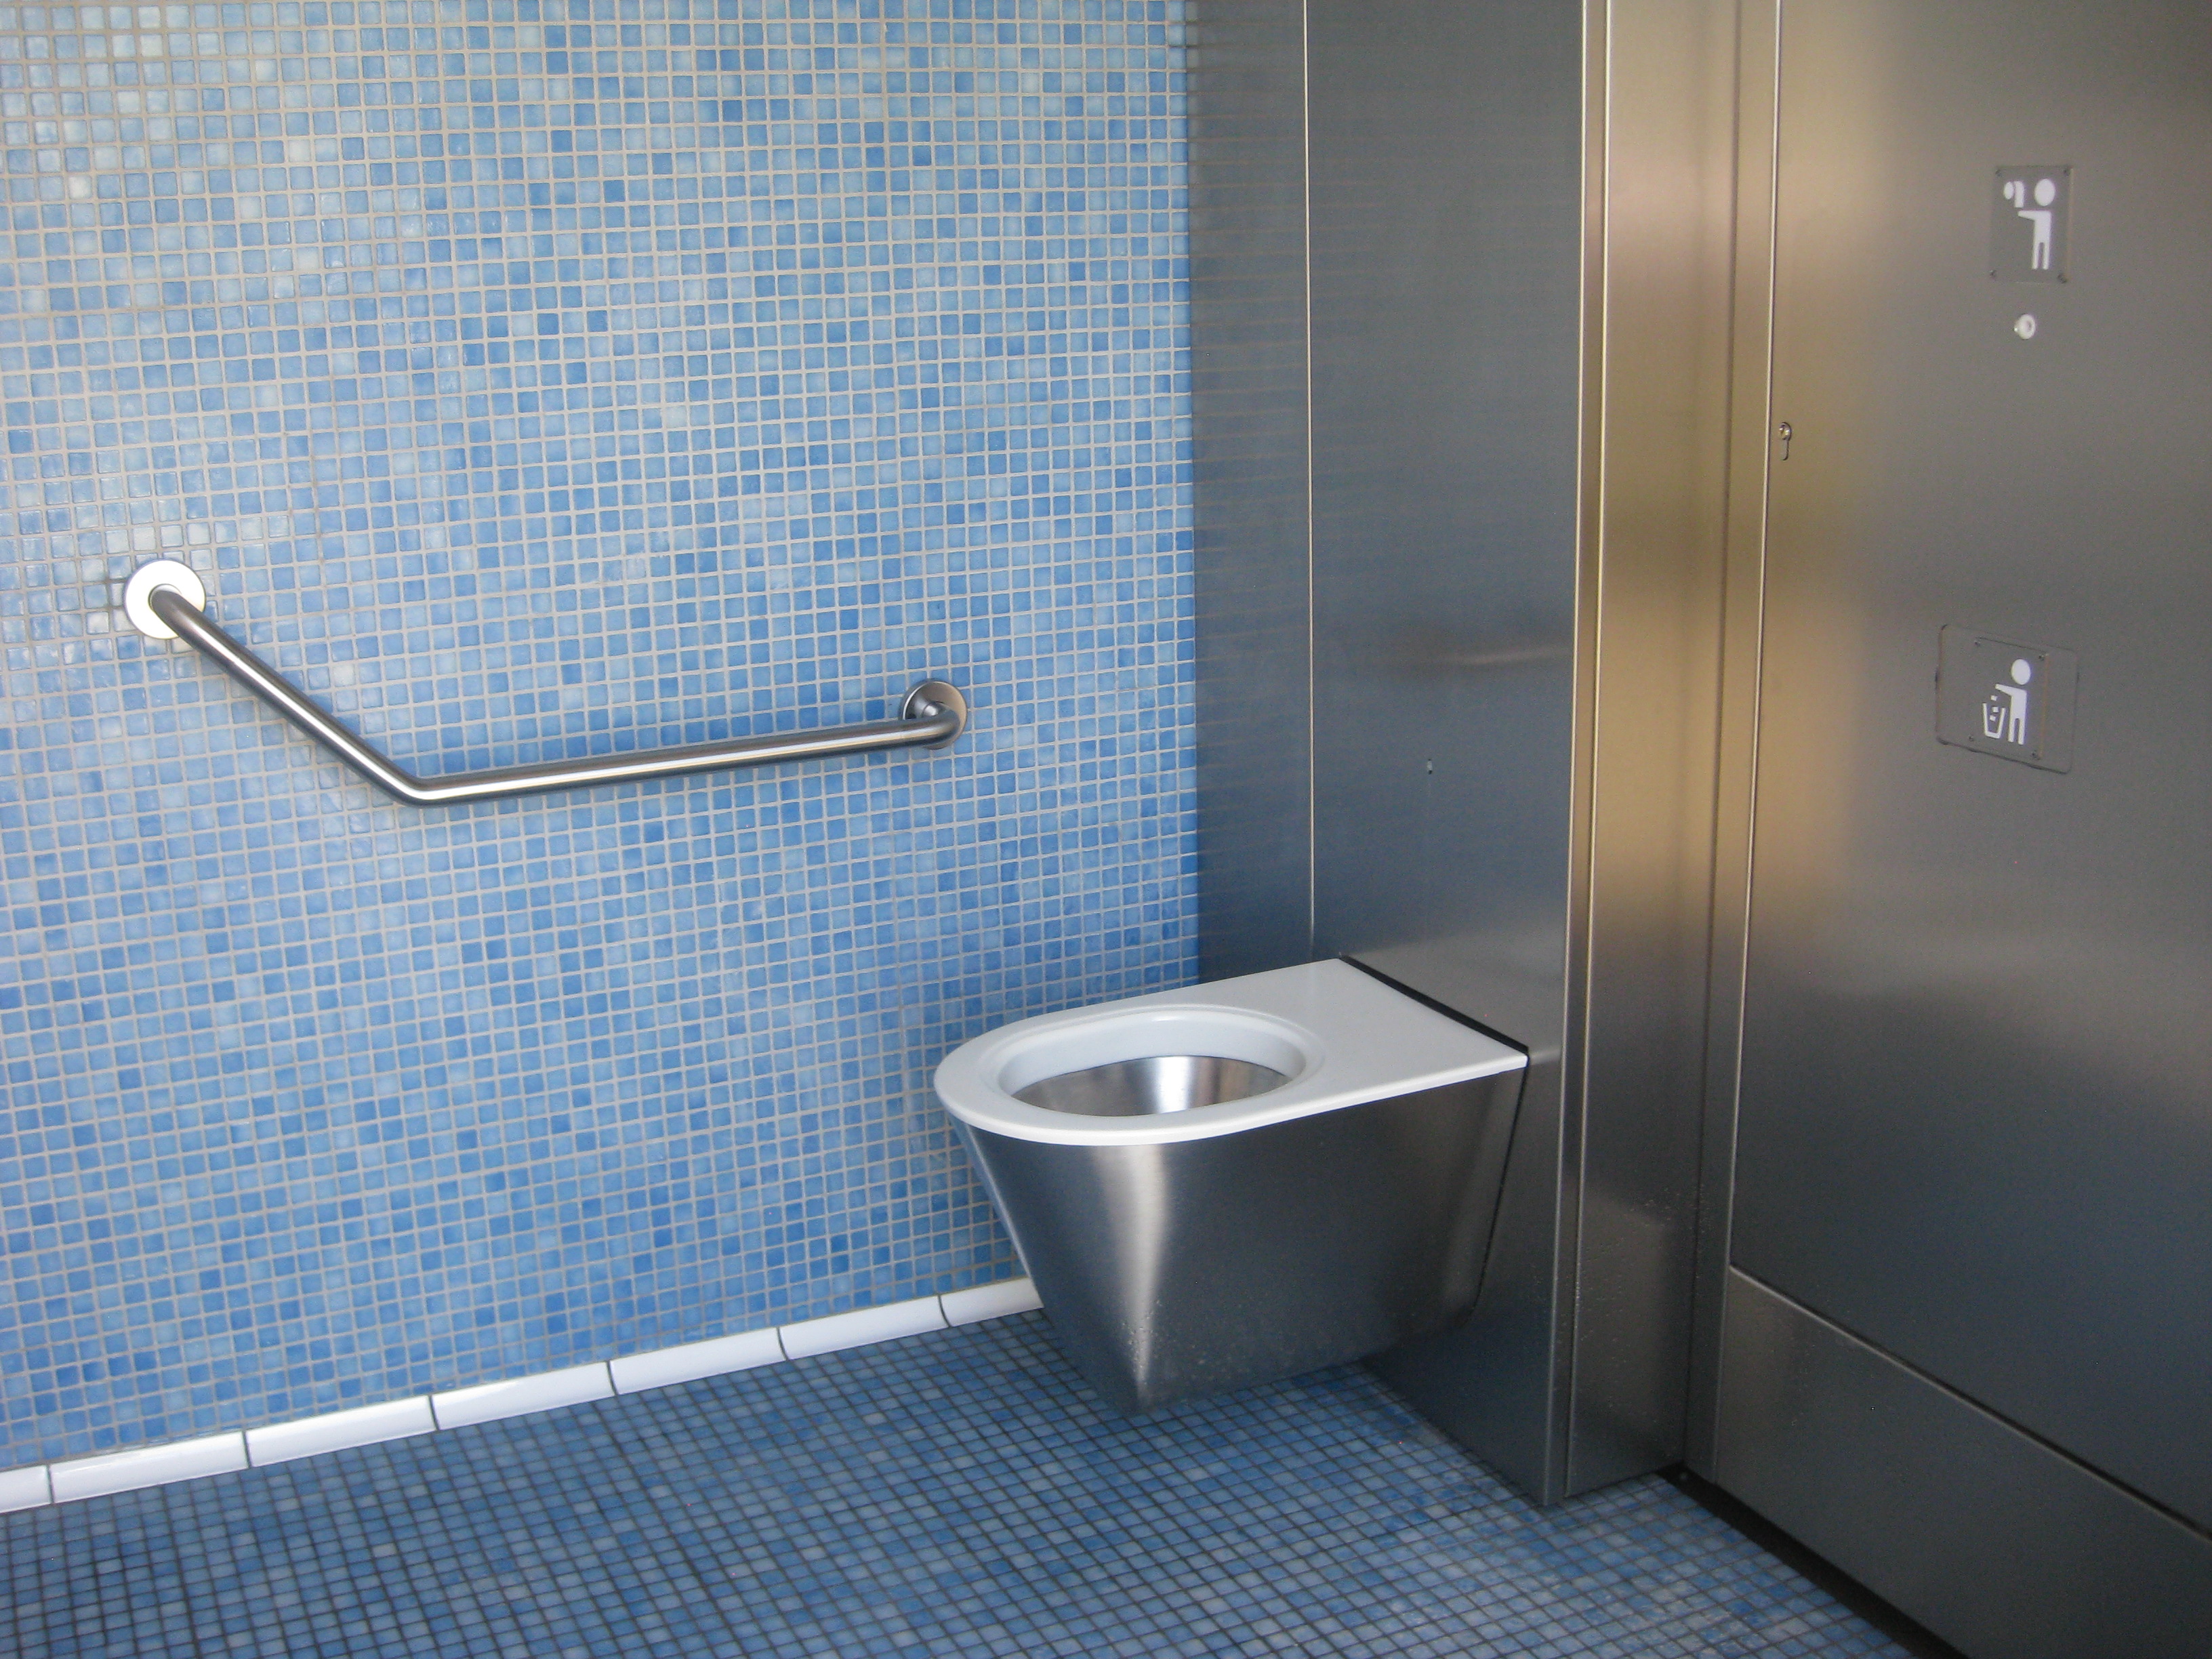 Toilettes publiques automatique MPS assure le nettoyage et la désinfection